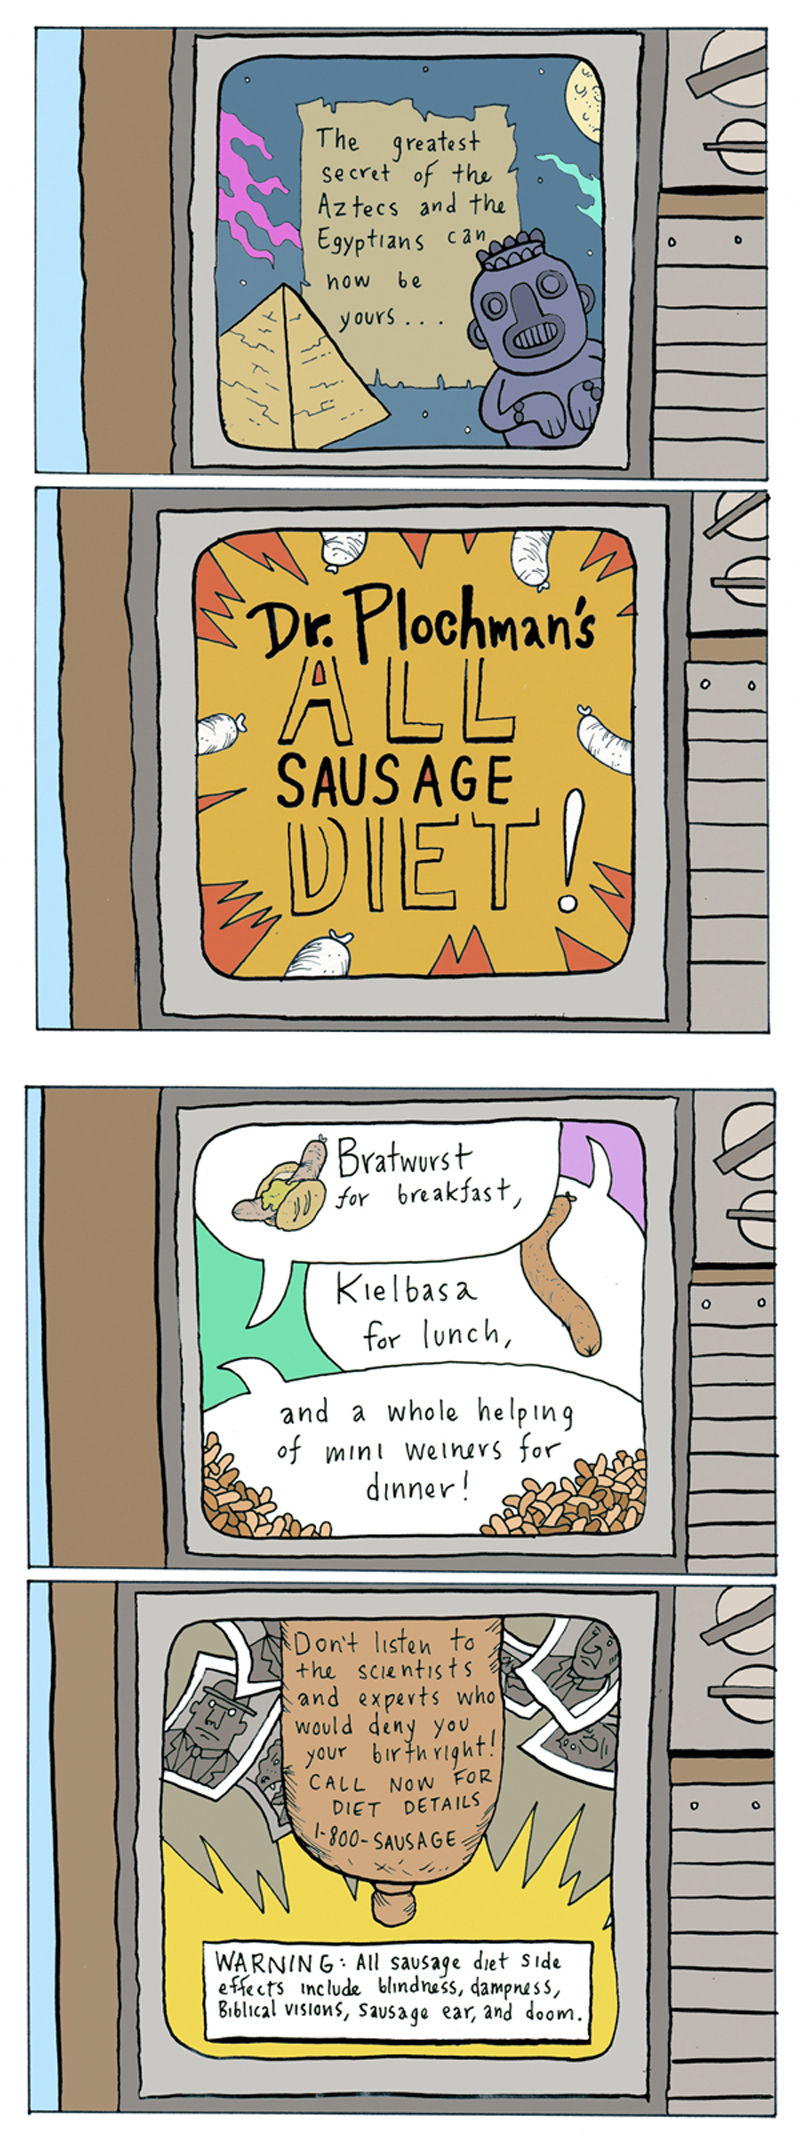 New Year’s Resolution: Sausage Diet